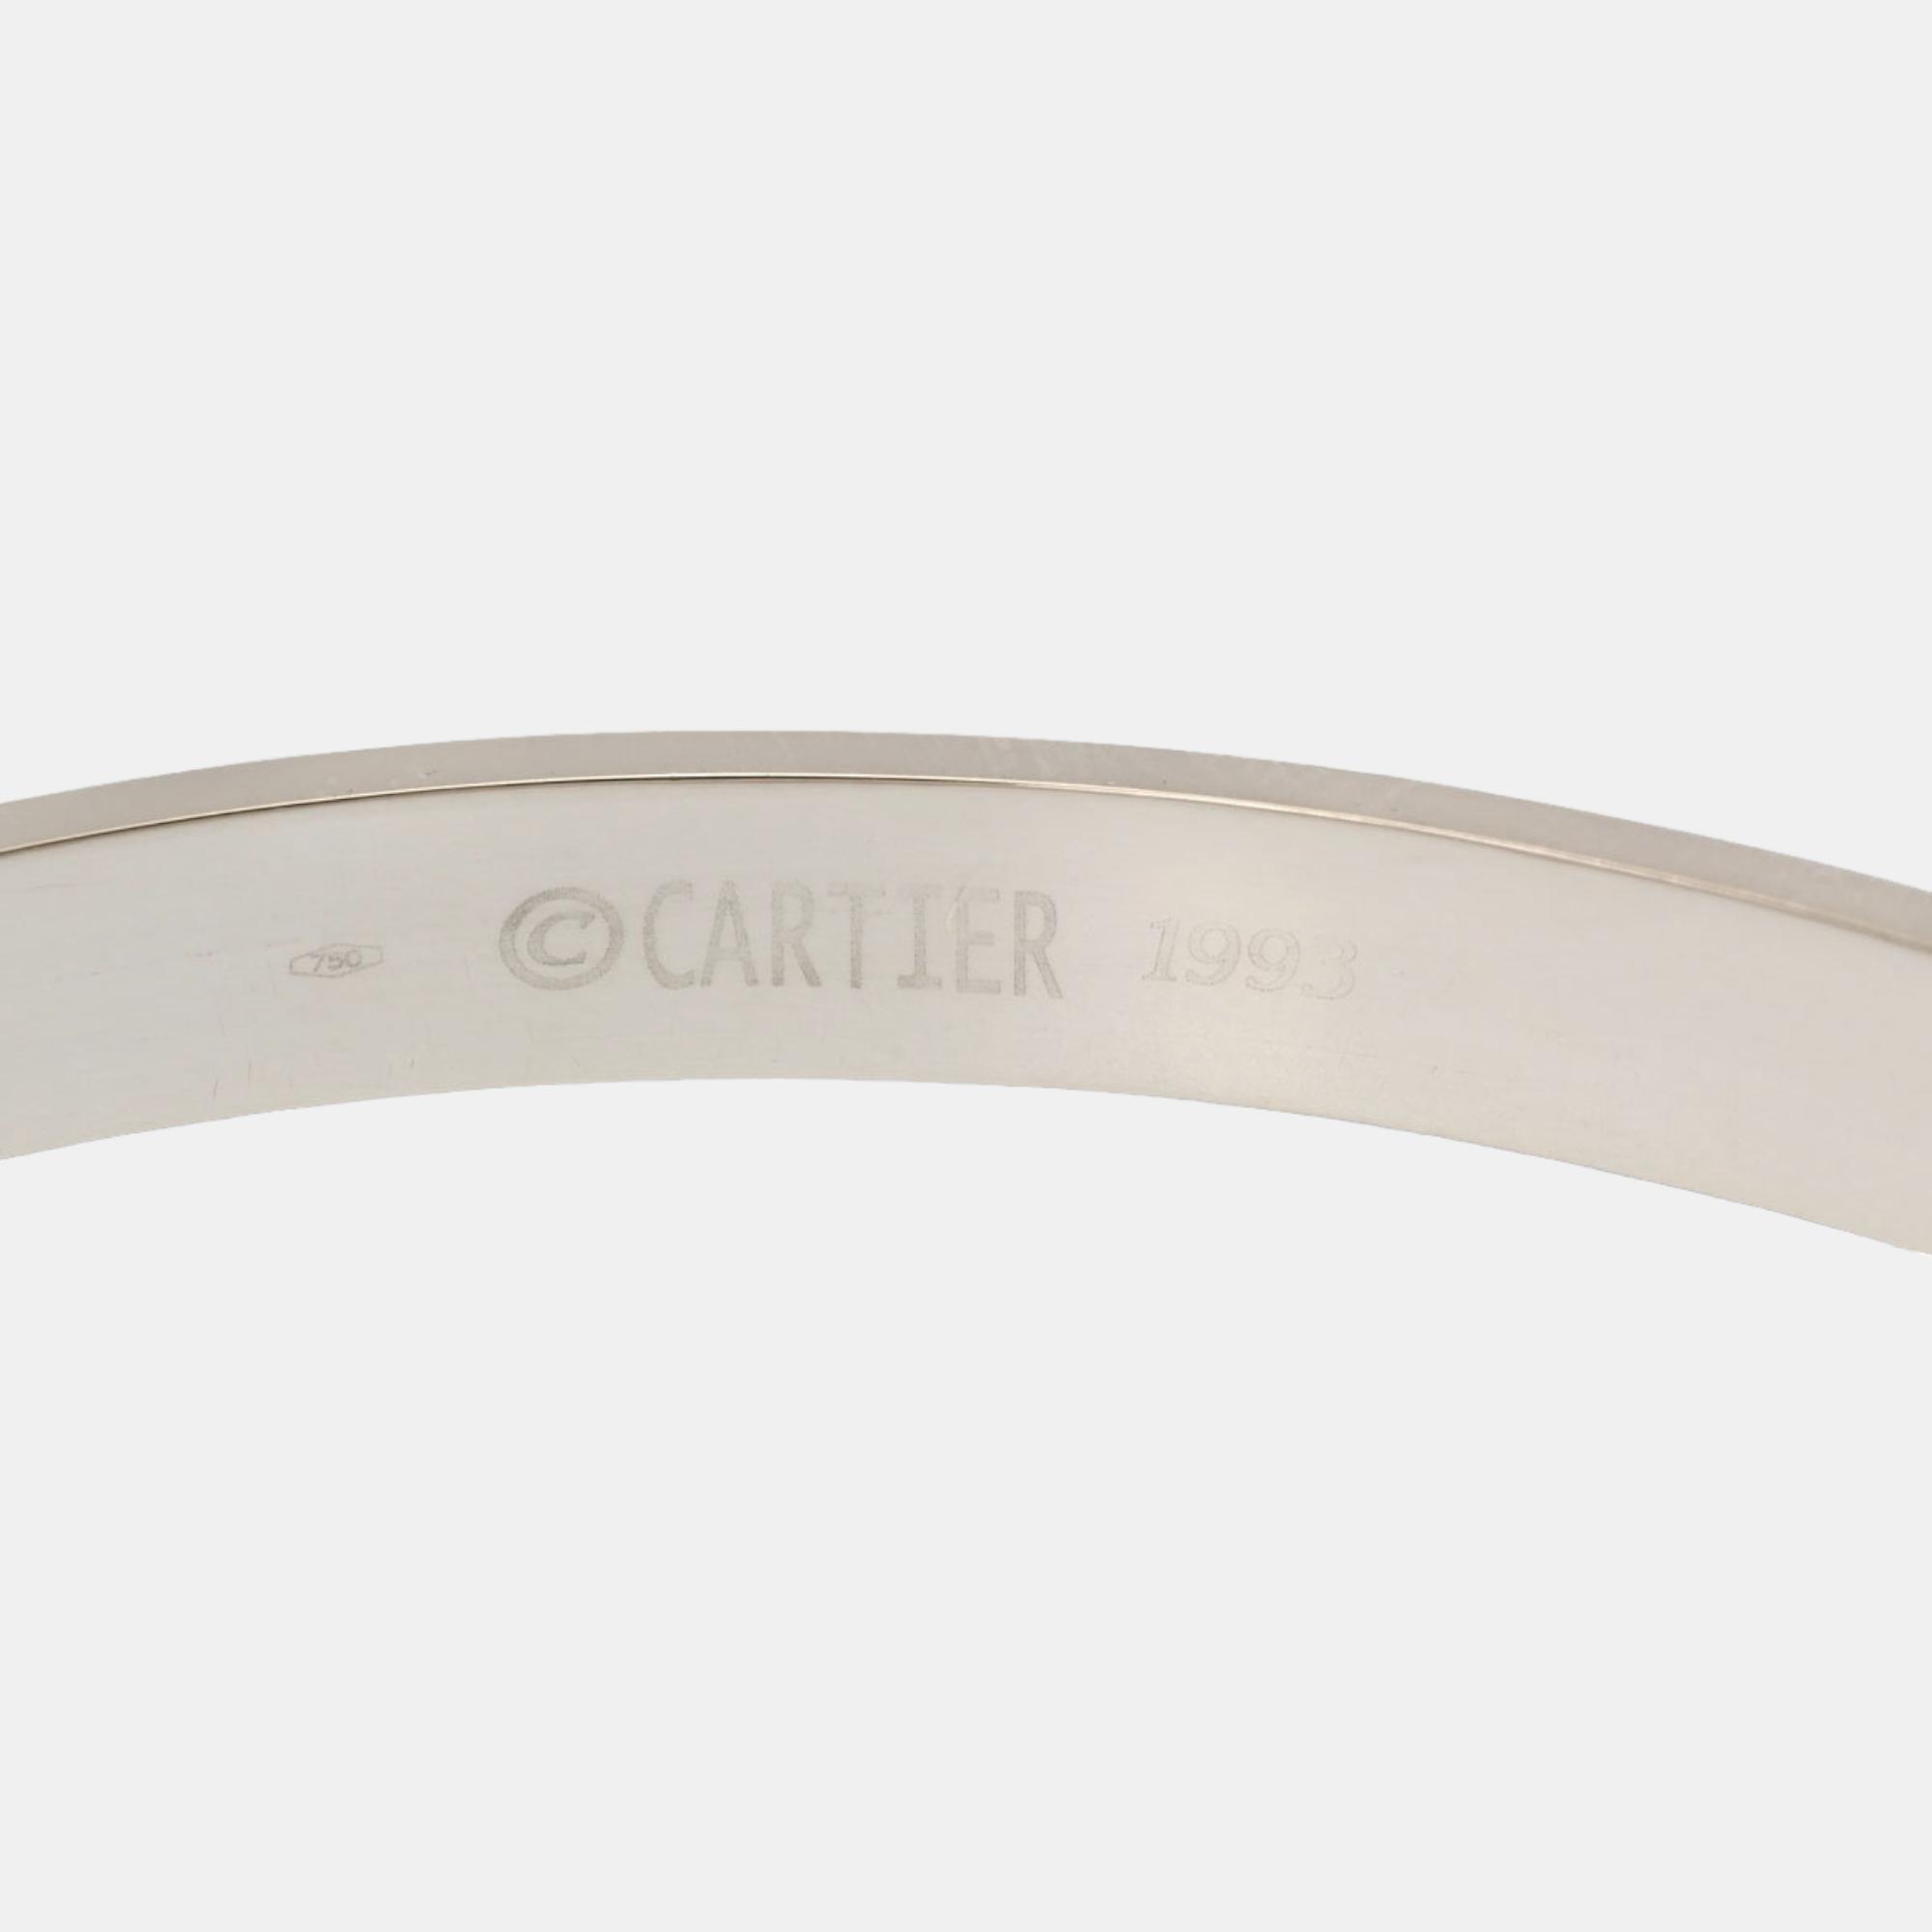 Cartier Love 18K White Gold Bracelet 17